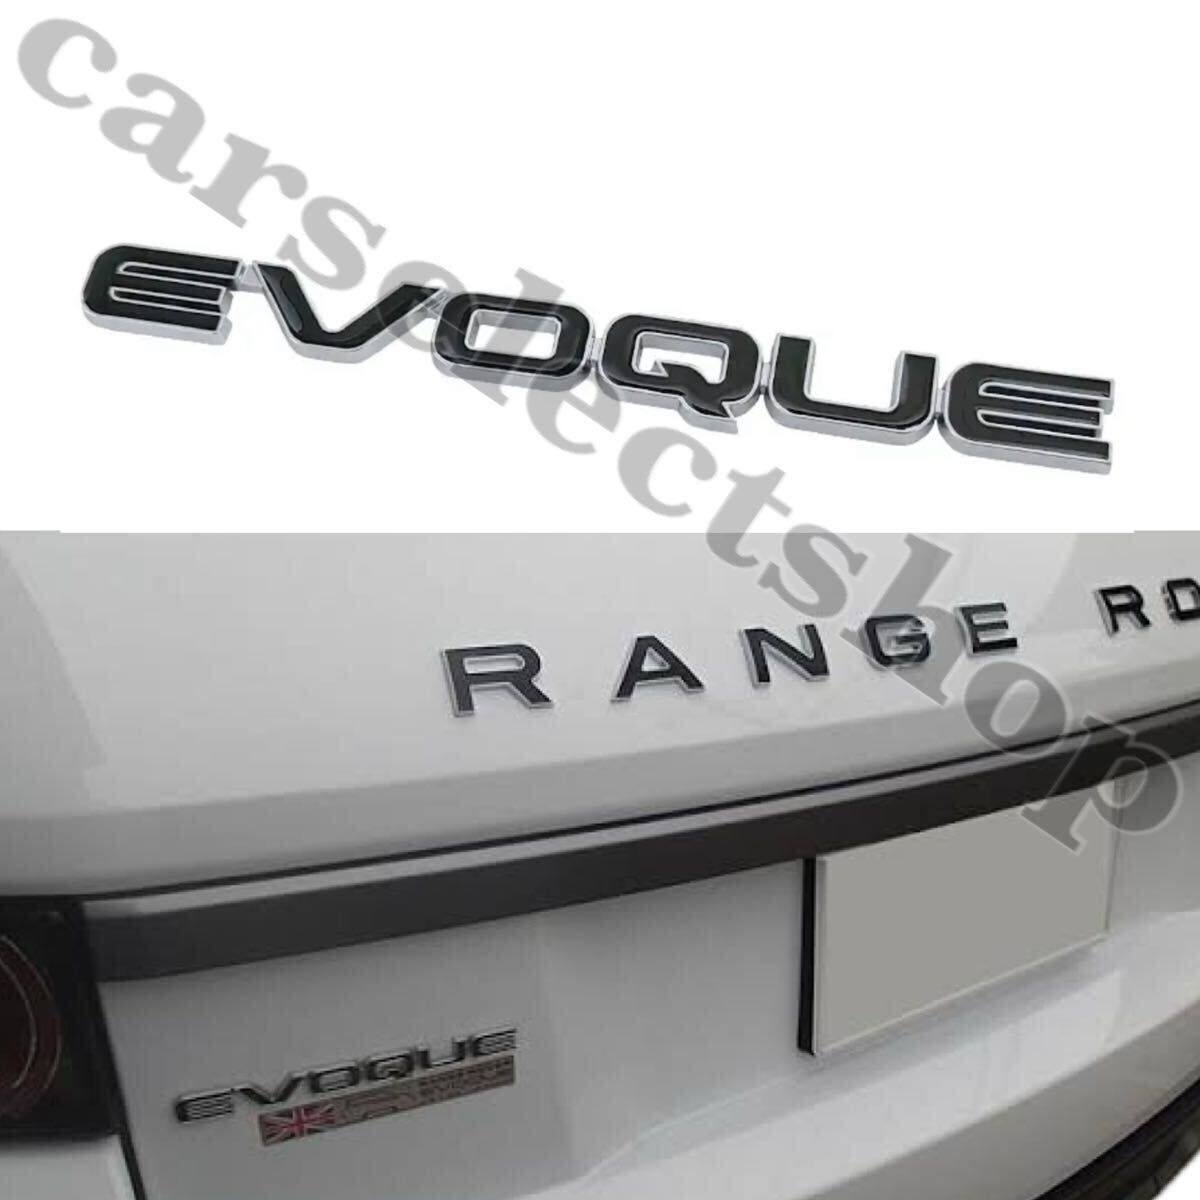 即納/送料込◇[EVOQUE]エンブレム Range Rover レンジローバー イヴォーク フロント リア トリム カスタム ランドローバー (黒×シルバー)の画像2